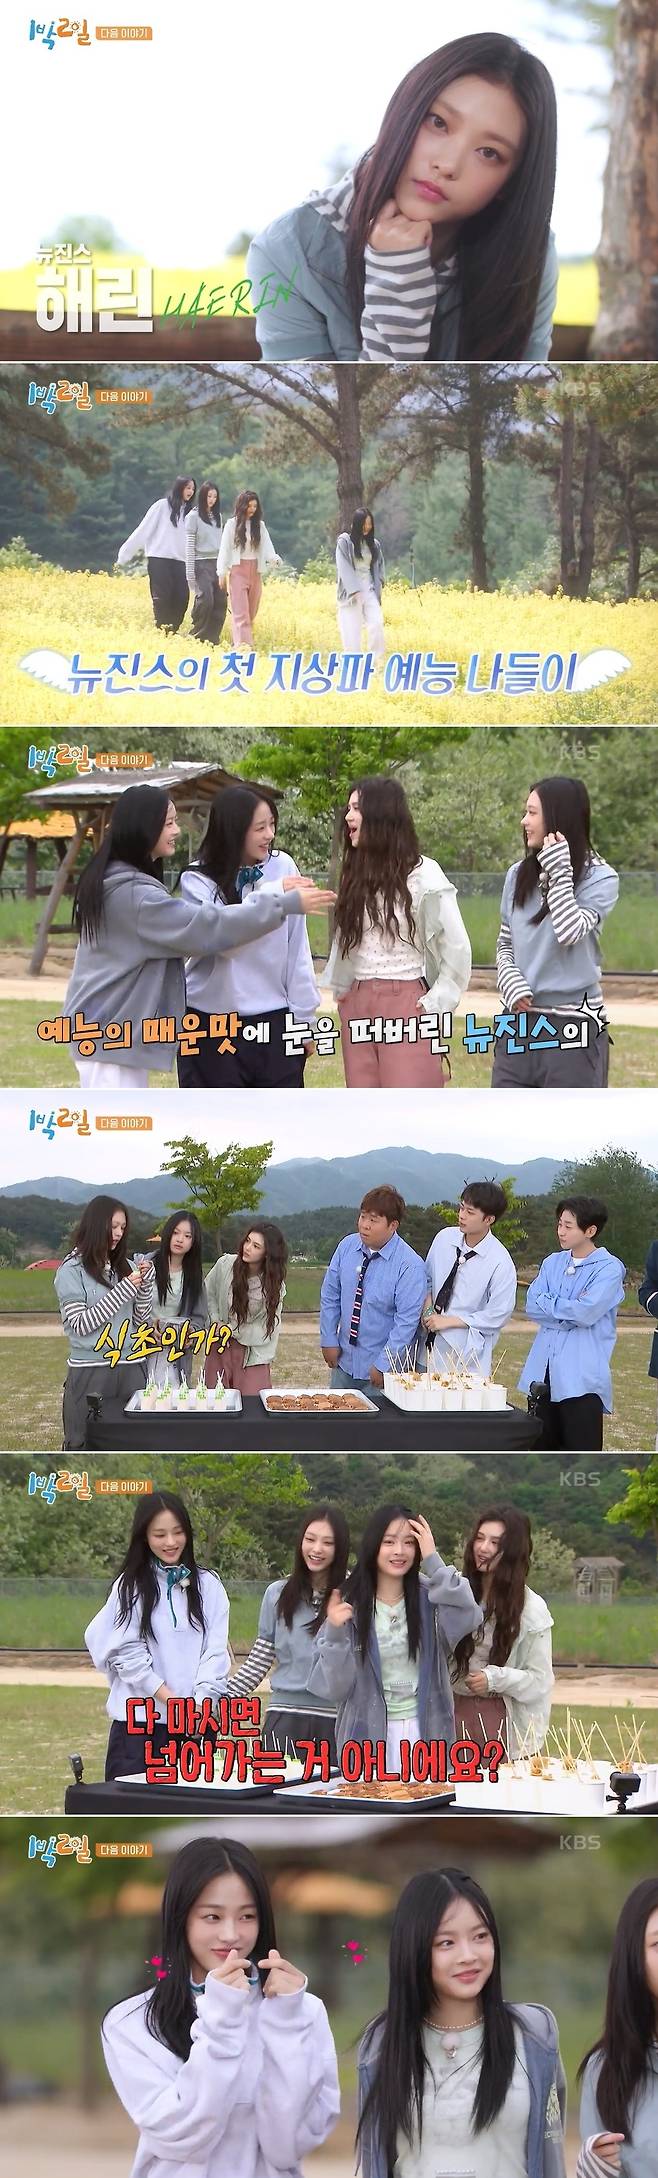 KBS 2TV 예능 프로그램 ‘1박2일 시즌4’ 방송 캡처